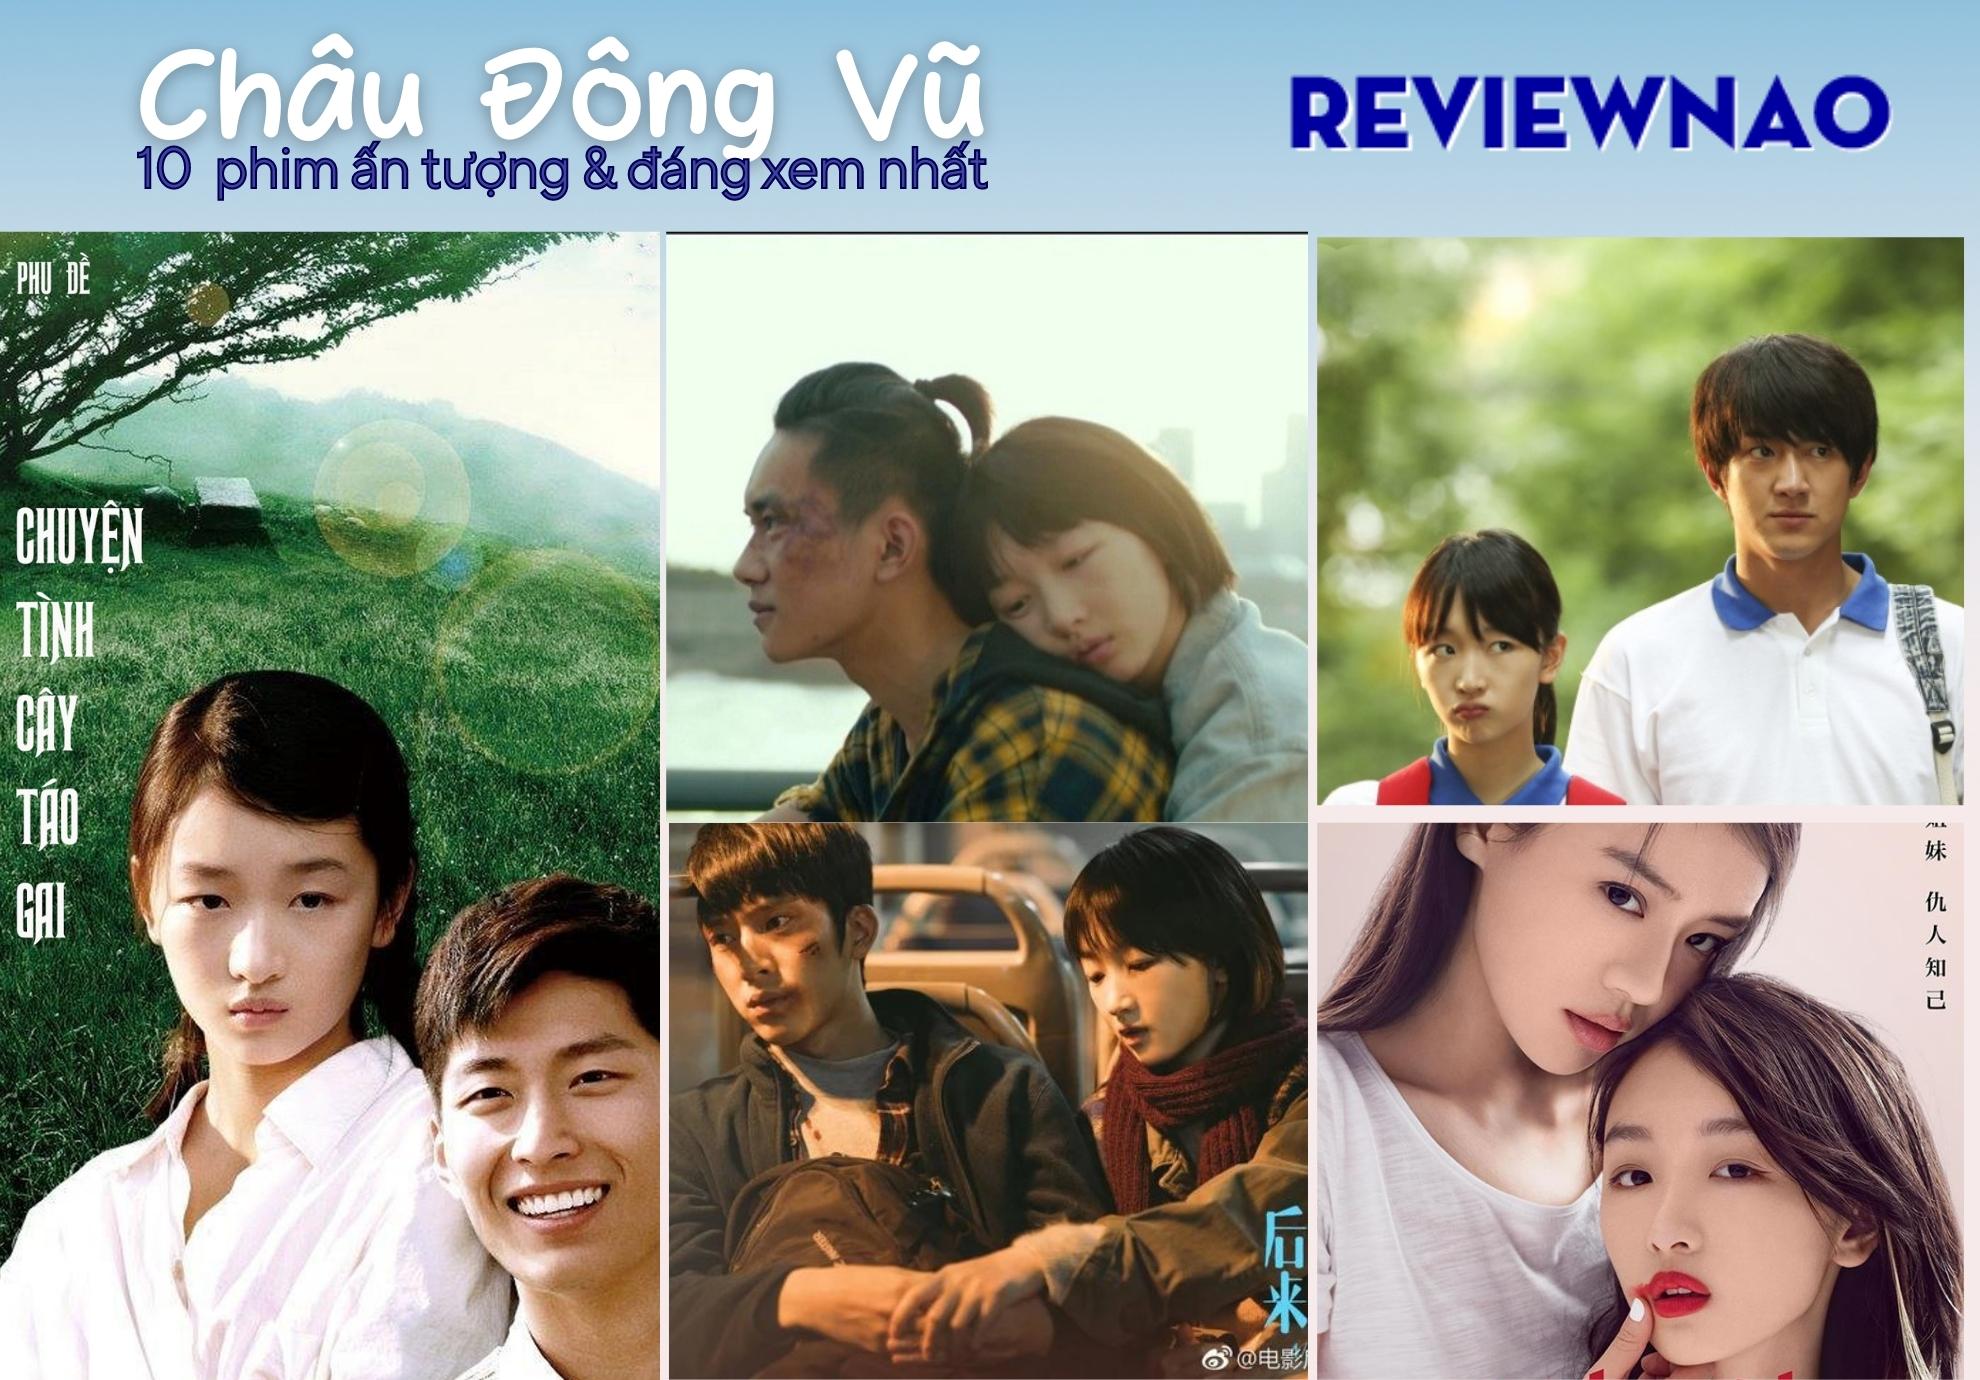 10 phim của Châu Đông Vũ được khán giả yêu thích và đánh giá cao